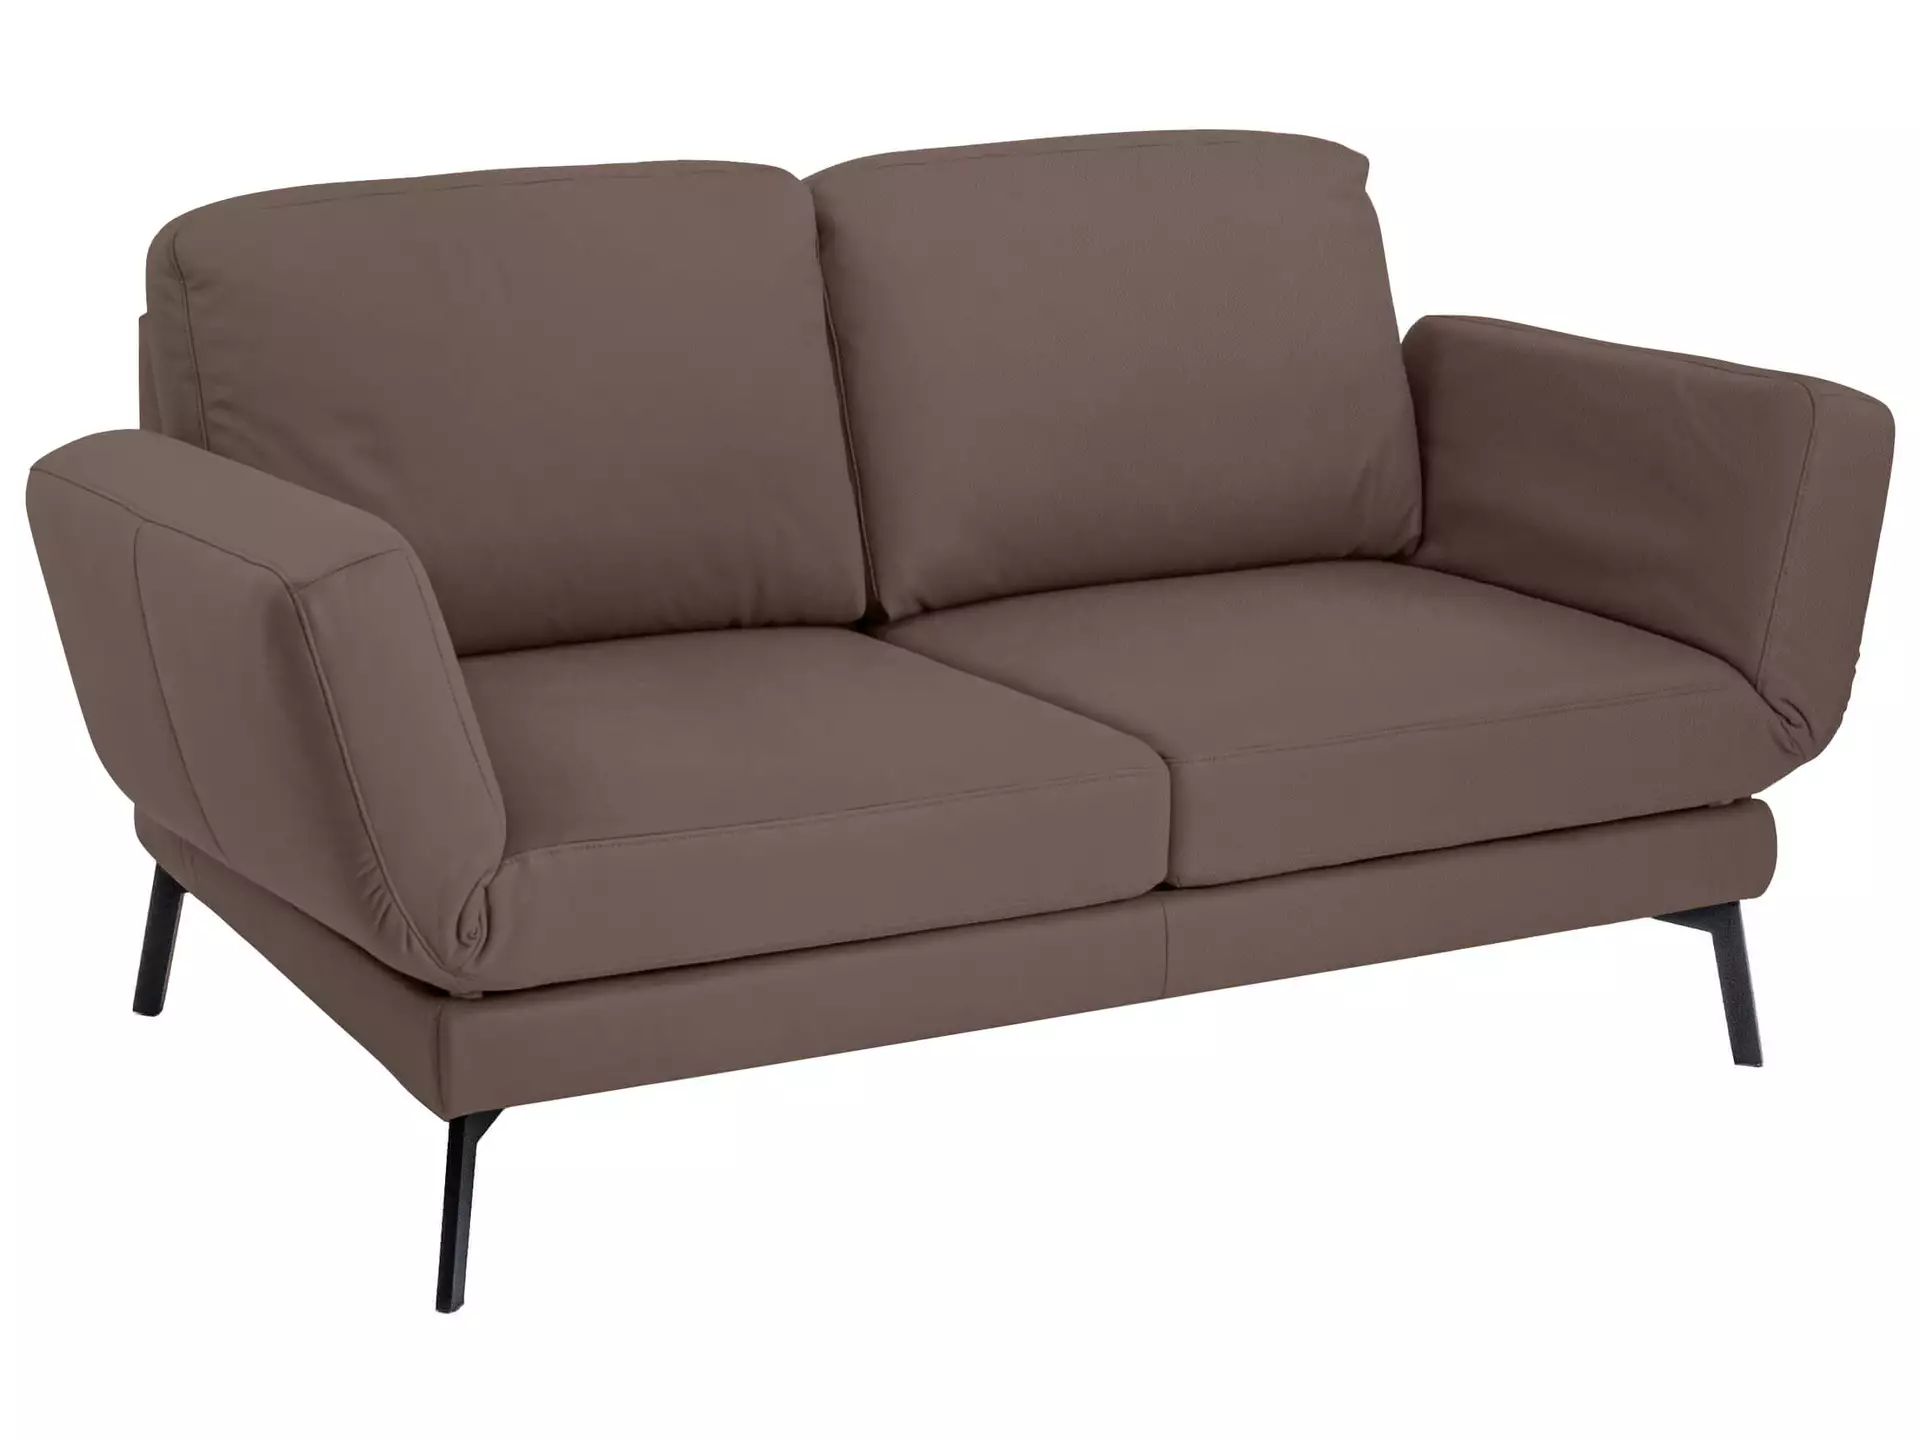 Sofa Toledo Basic Candy / Farbe: Elephant / Material: Leder Basic